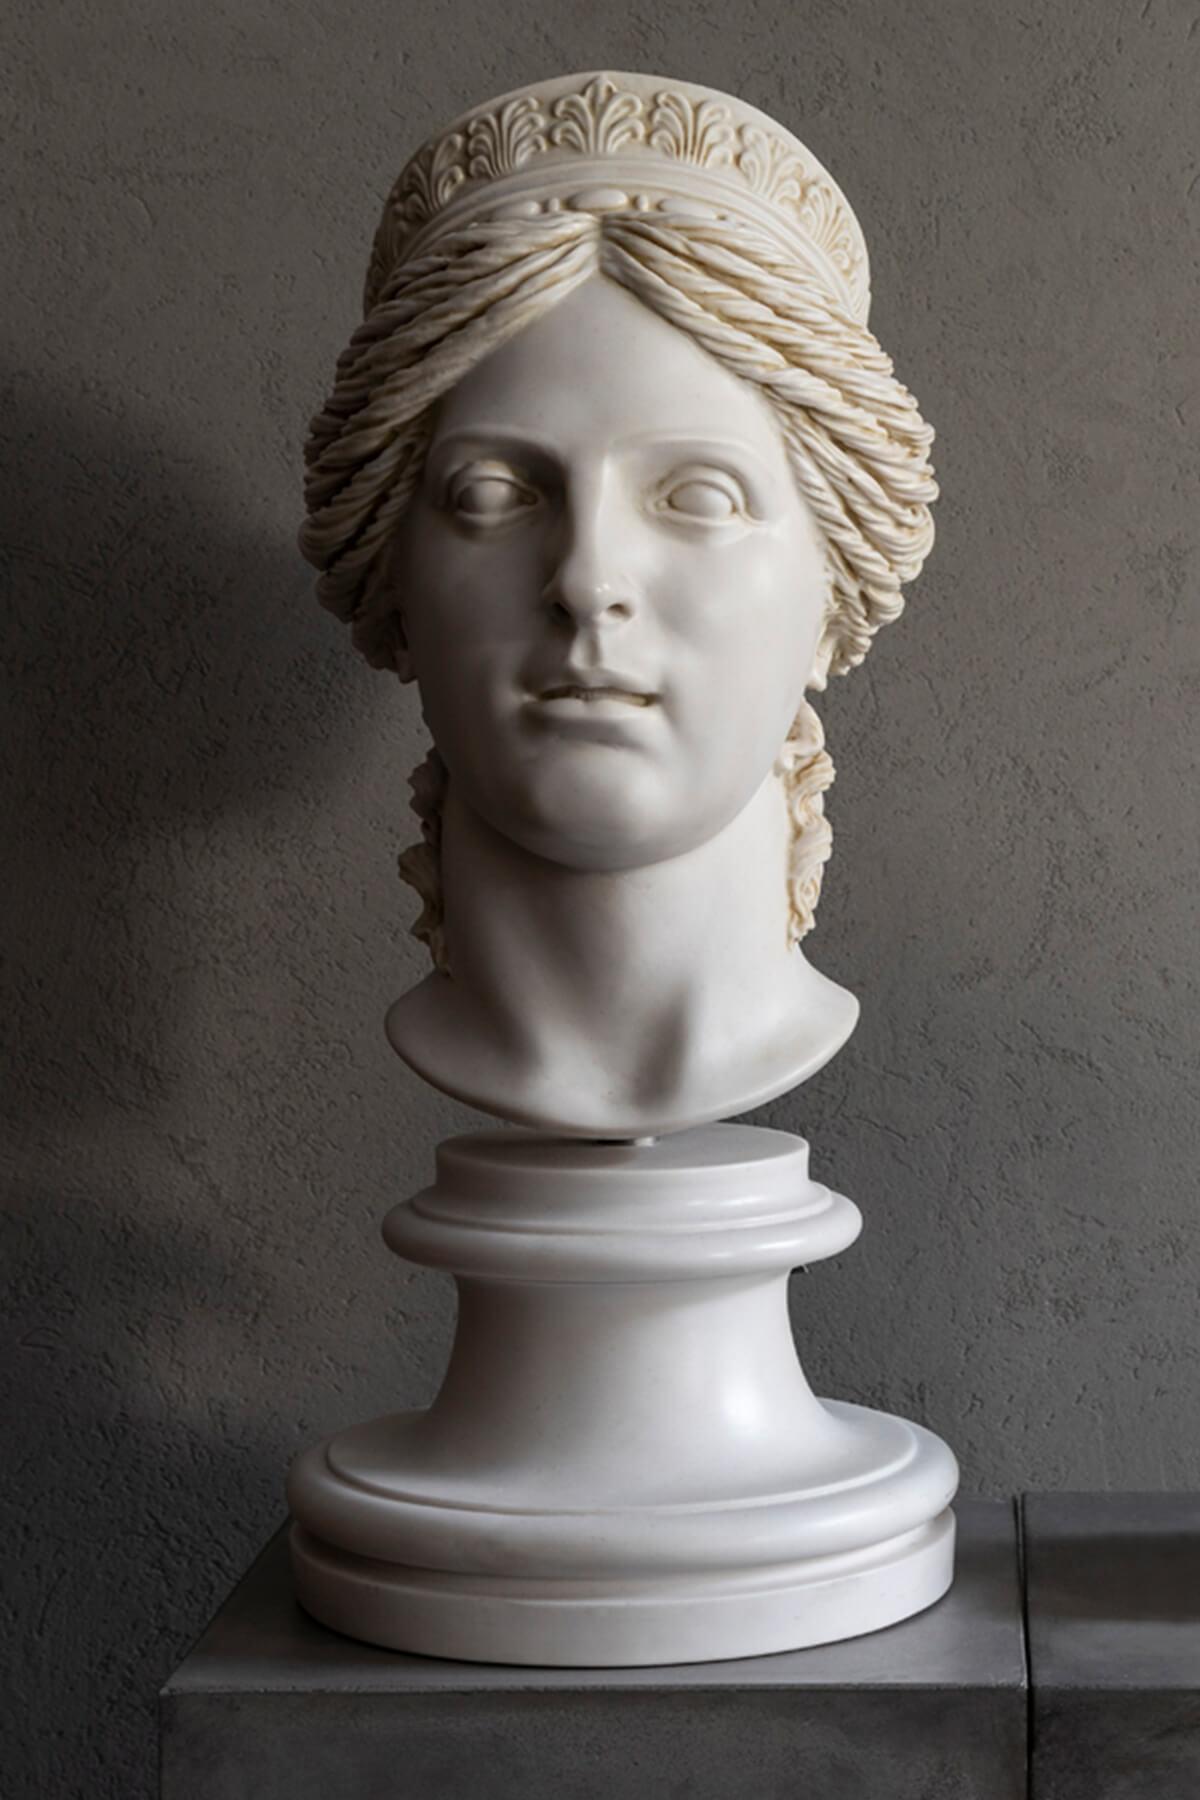 Voici le buste exquis d'Héra, une représentation étonnante de la puissante et belle déesse du mariage, des femmes, de la naissance et de l'abondance dans la mythologie grecque. Cette magnifique sculpture est l'ajout parfait à votre maison ou à votre